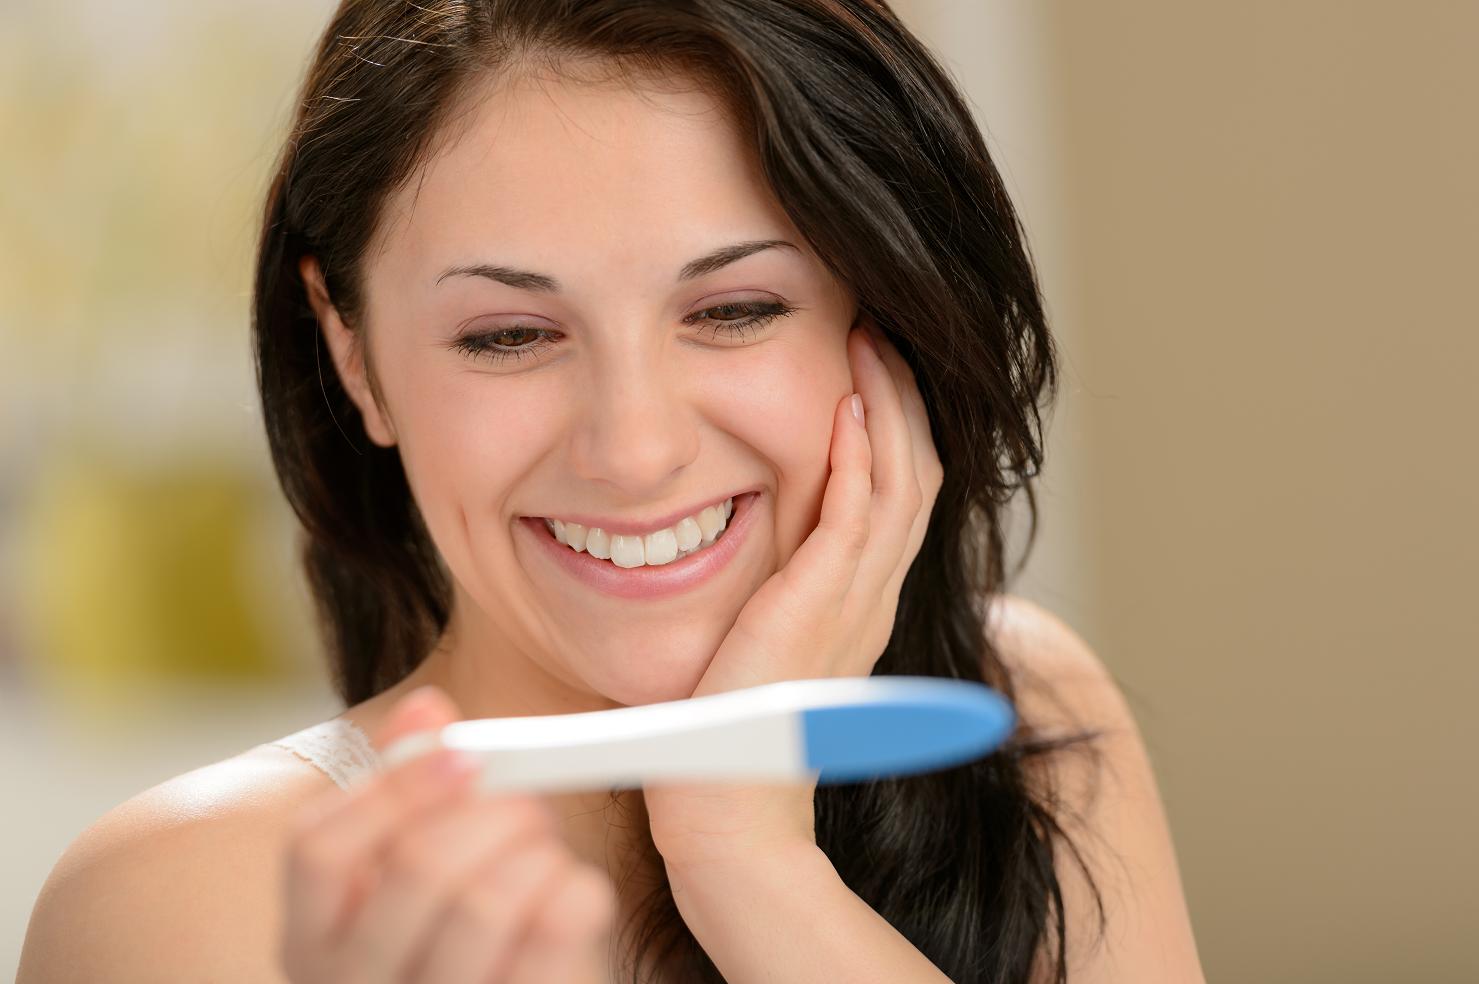 كم يوما بعد الحمل سيظهر الاختبار الحمل؟